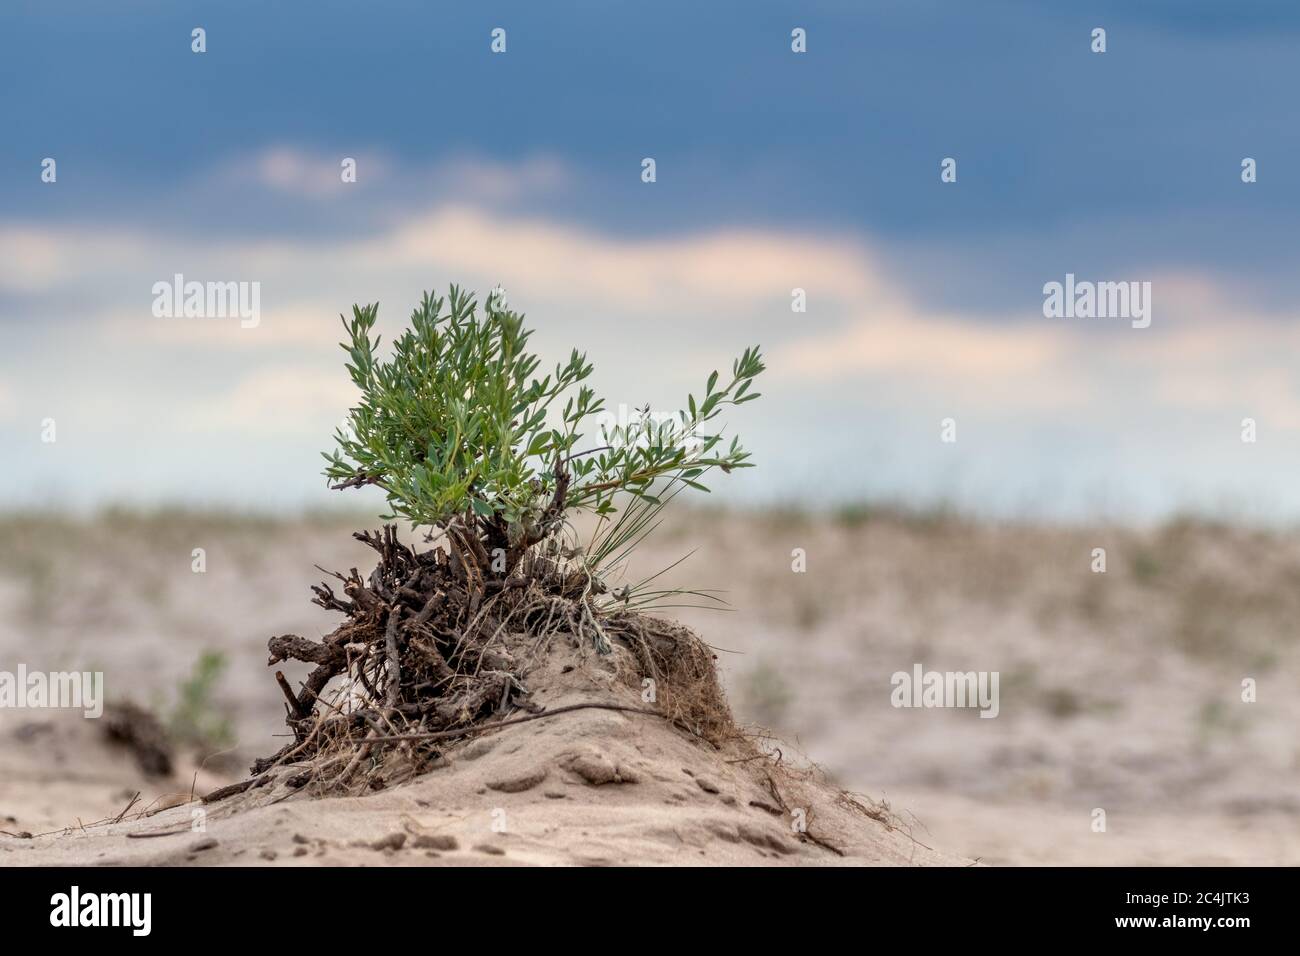 Petit Bush vert dans le sable avec ciel épique, croissance du désert. Nature botanique sauvage en gros plan avec contraste foncé nuages ciel arrière-plan Banque D'Images